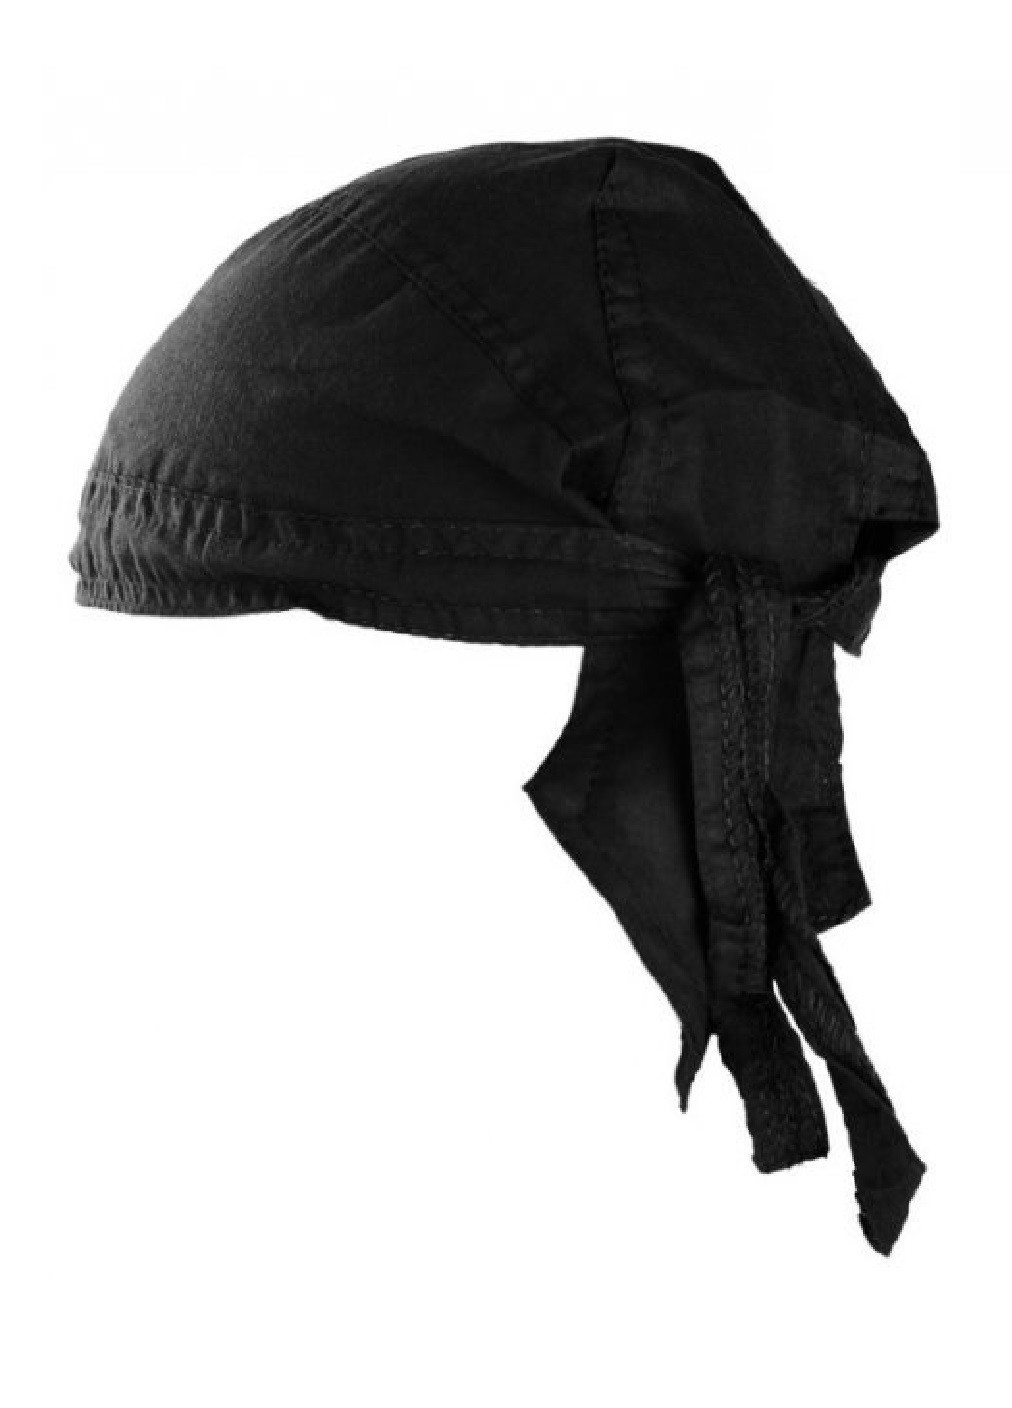 Бандана косинка на голову універсальна бавовняна дихаюча для риболовлі полювання туризму походів (474112-Prob) Чорна Unbranded (257374492)